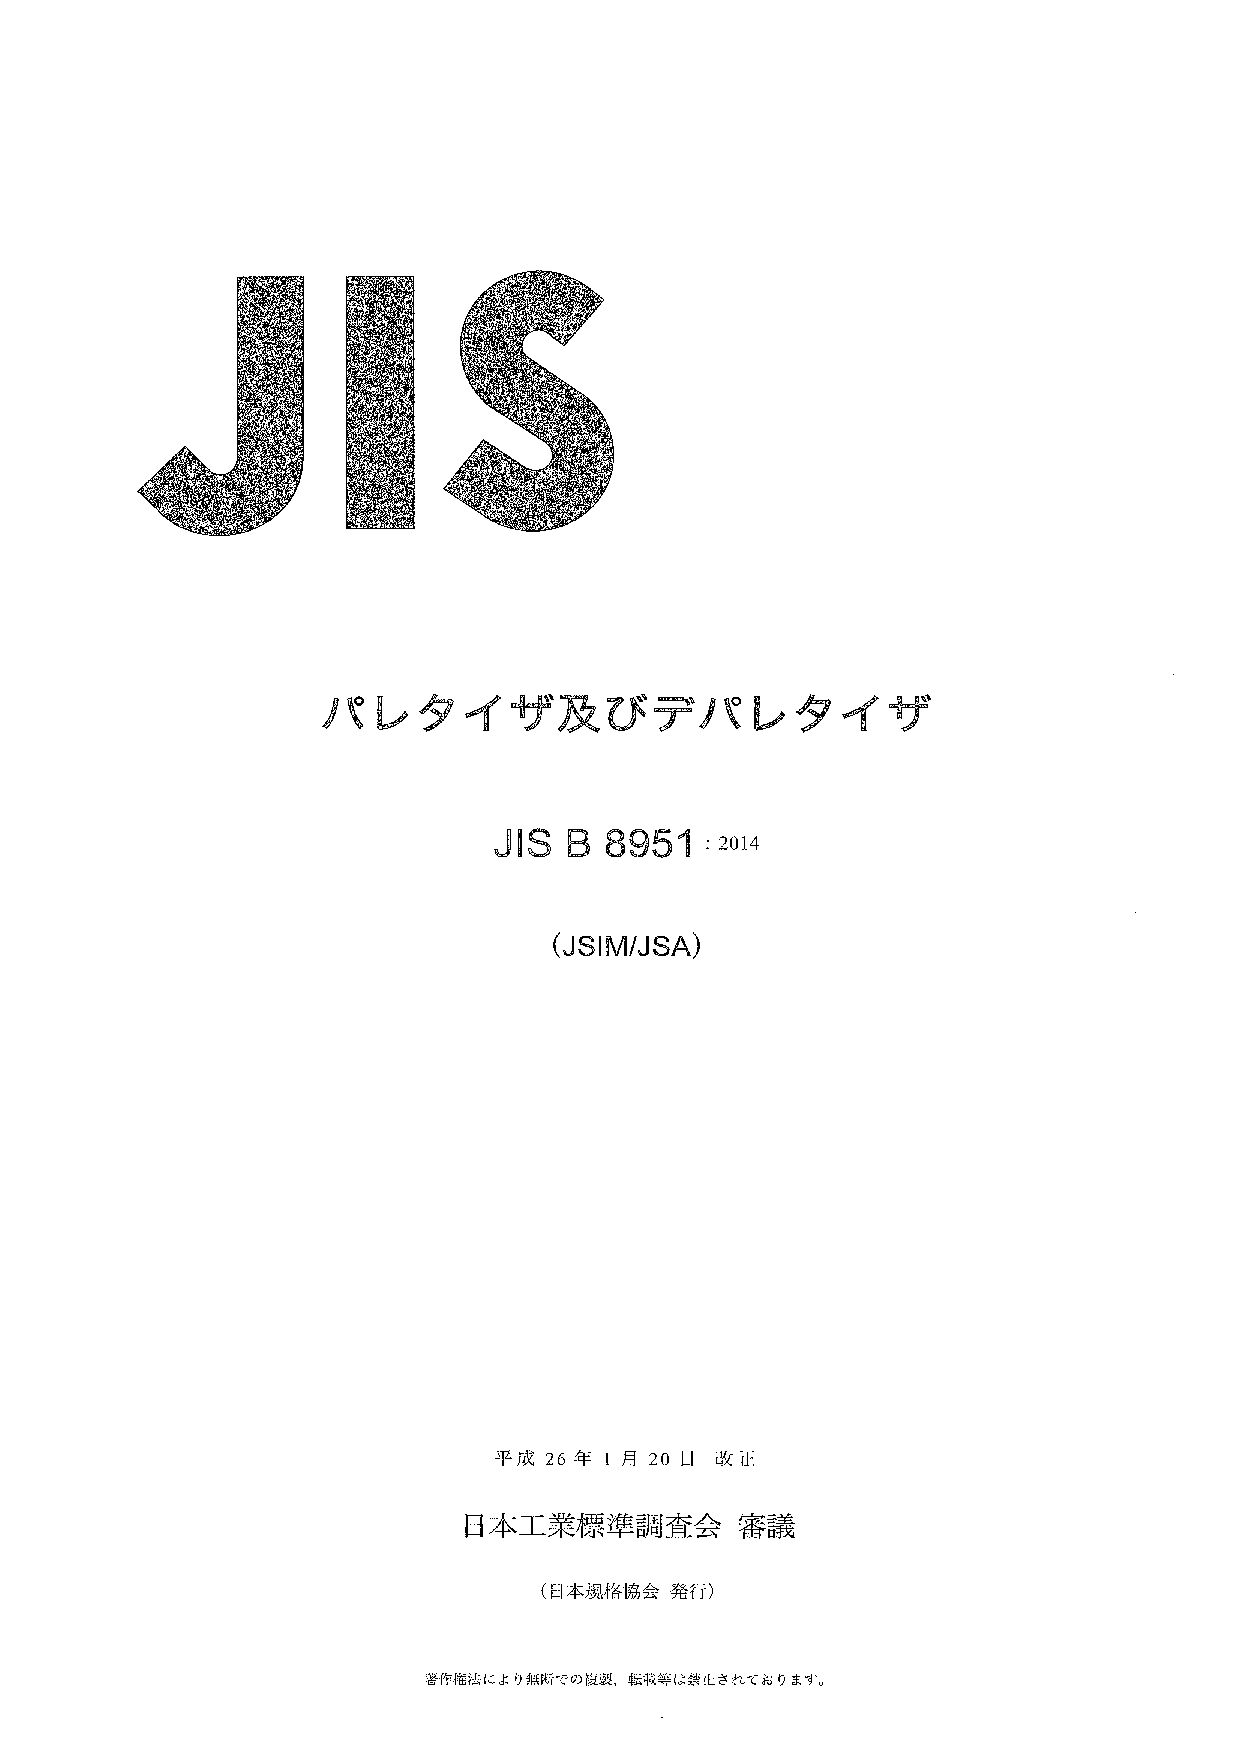 JIS B 8951:2014封面图